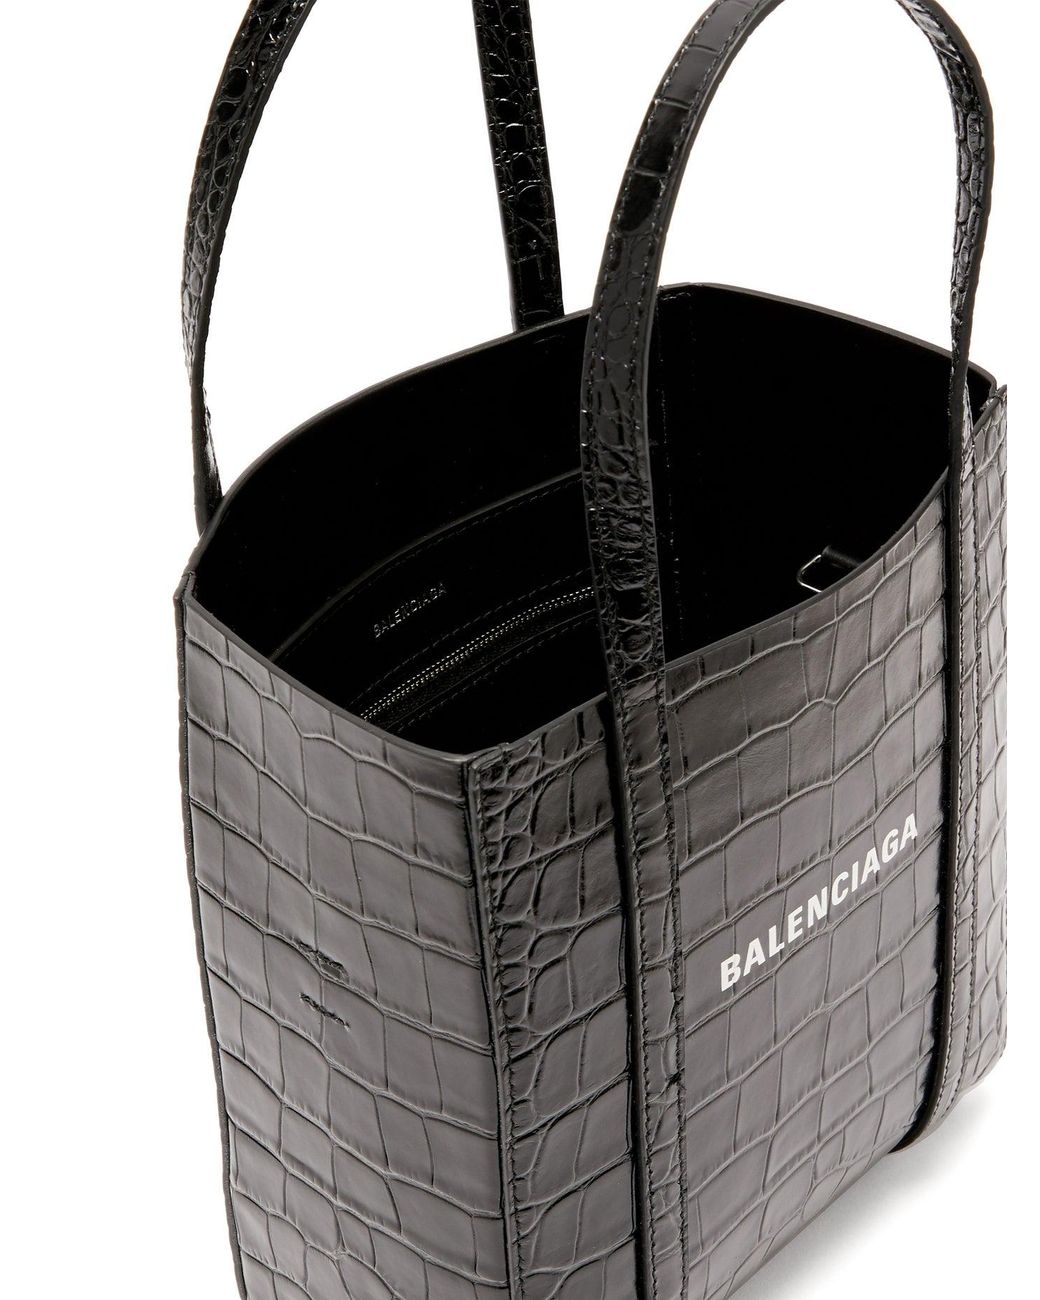 Balenciaga Everyday Xxs Crocodile-effect Leather Tote Bag in Black | Lyst